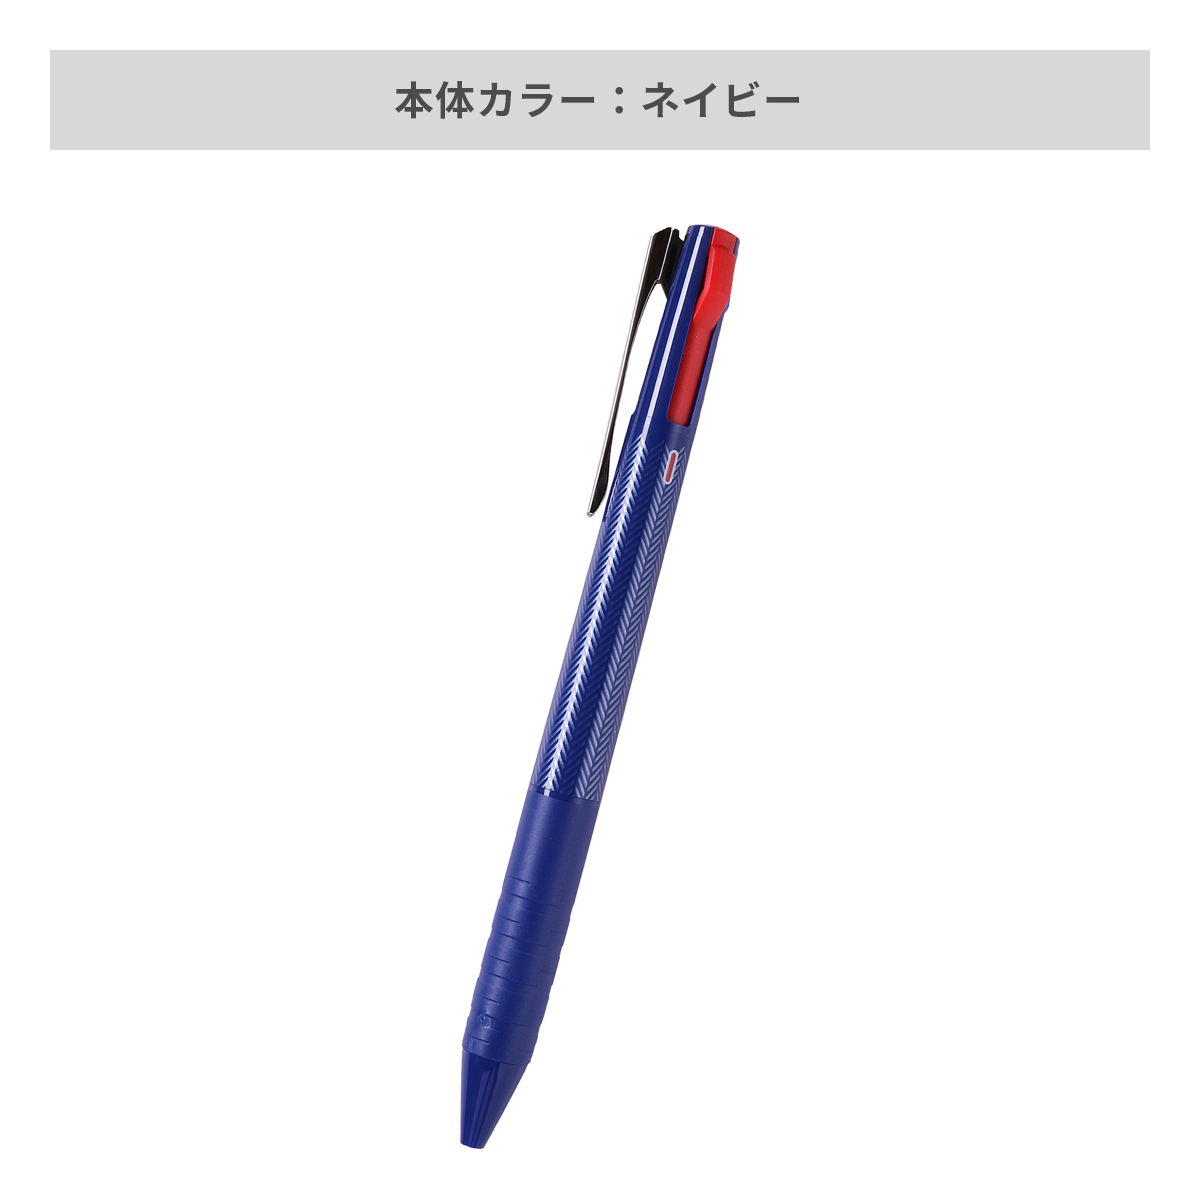 三菱鉛筆 ジェットストリーム スリムコンパクト 3色ボールペン 0.5mm【名入れボールペン / パッド印刷】 画像5